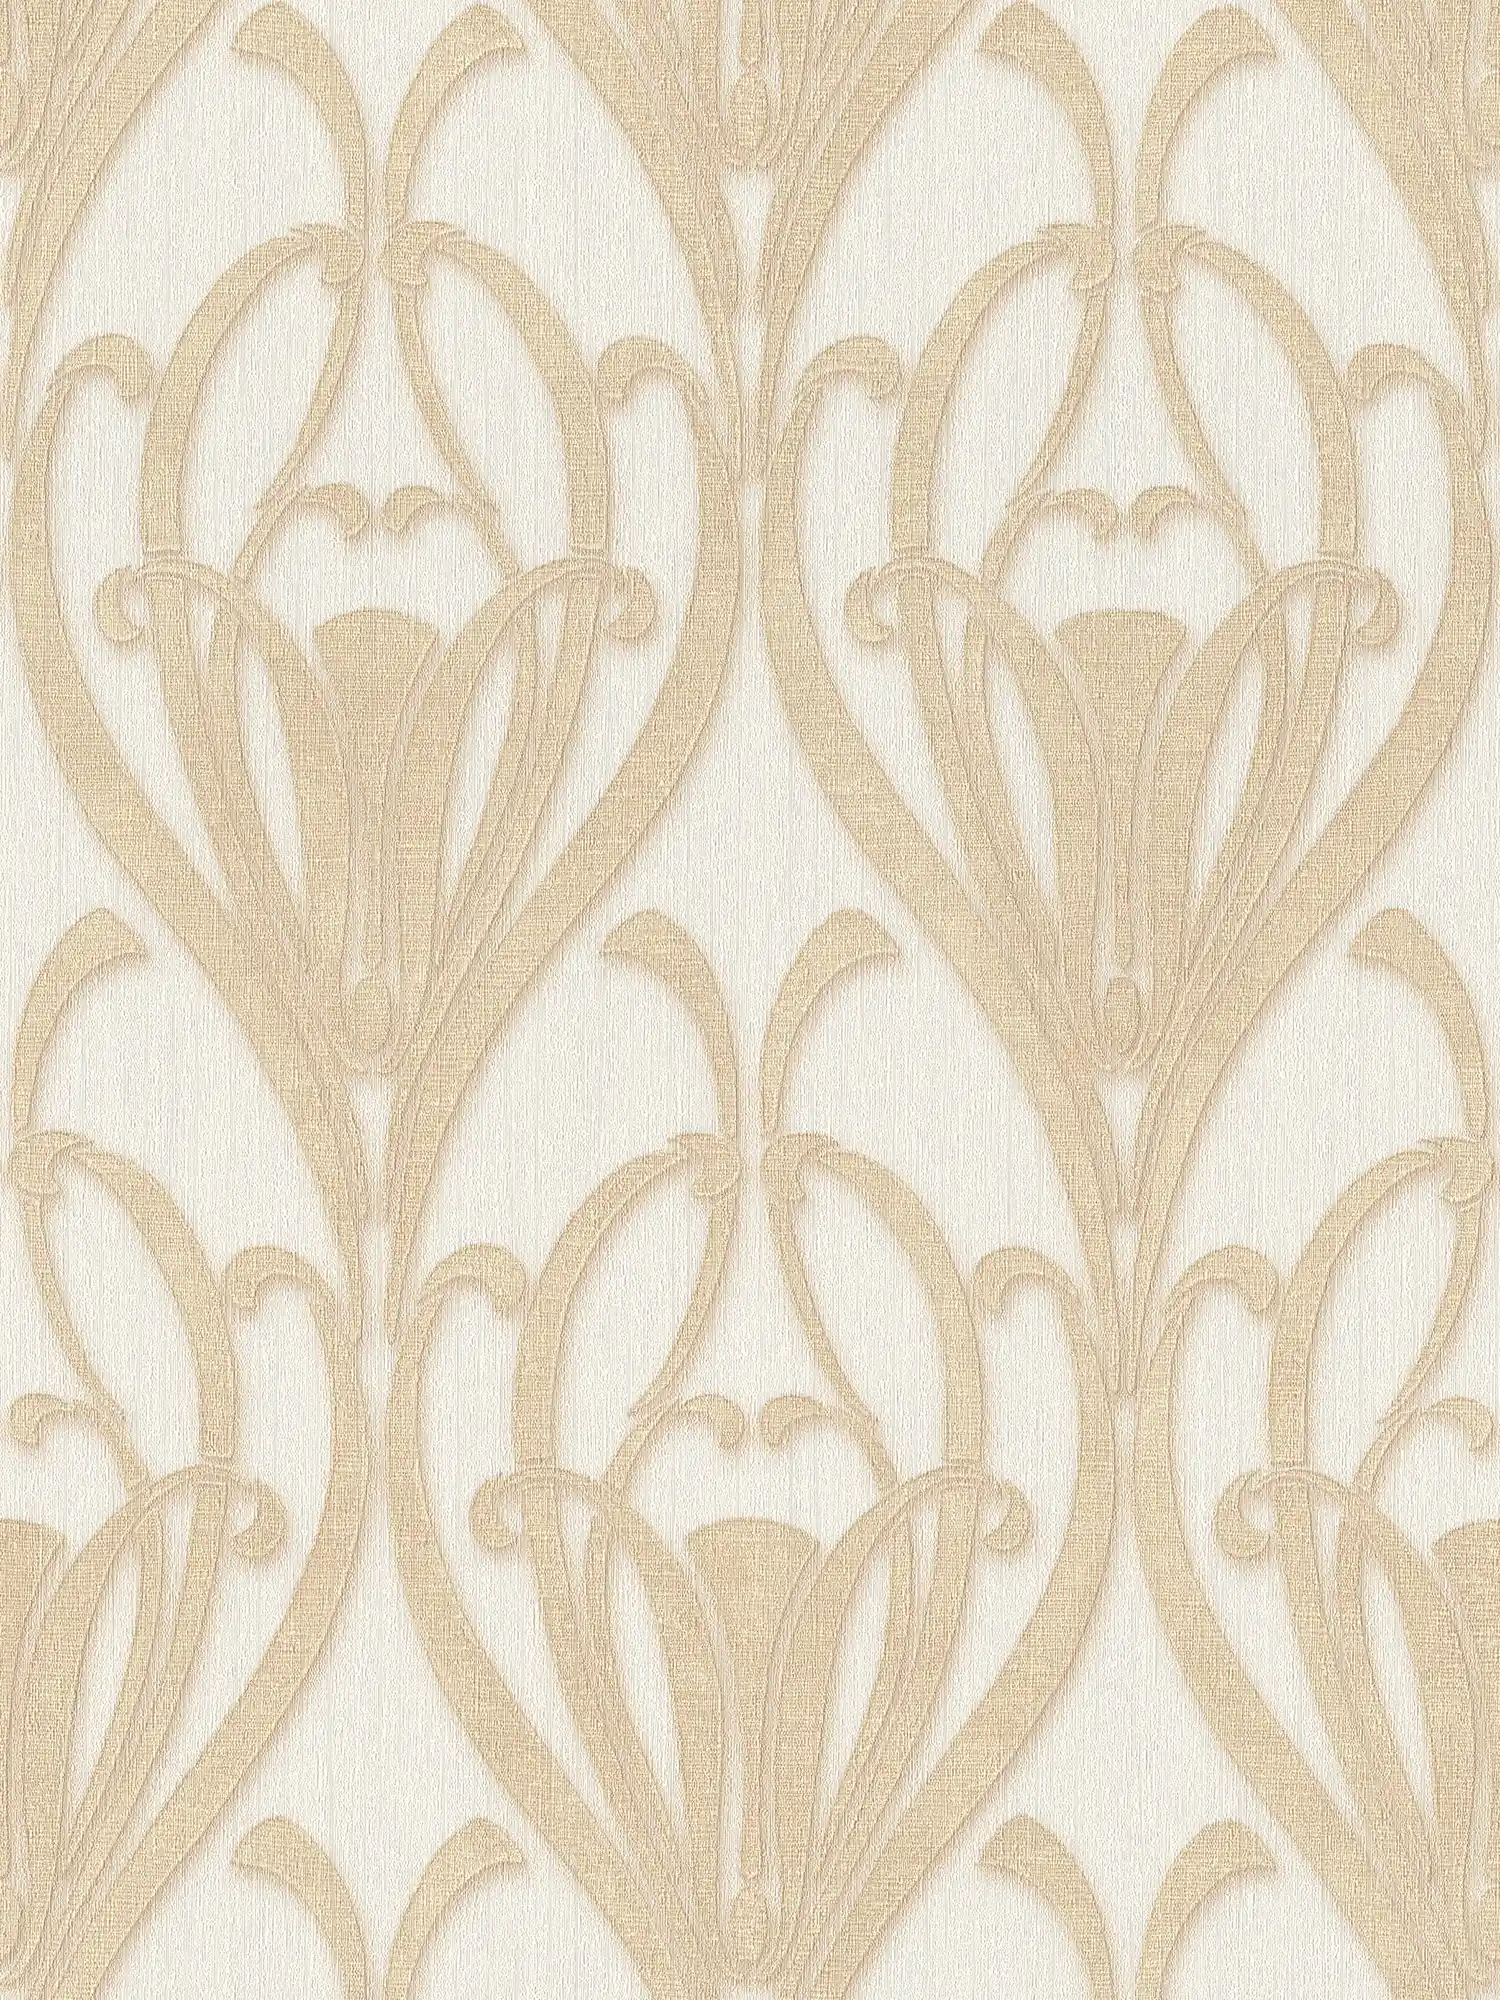 Art Deco behang met gouden patroon & textielstructuur
